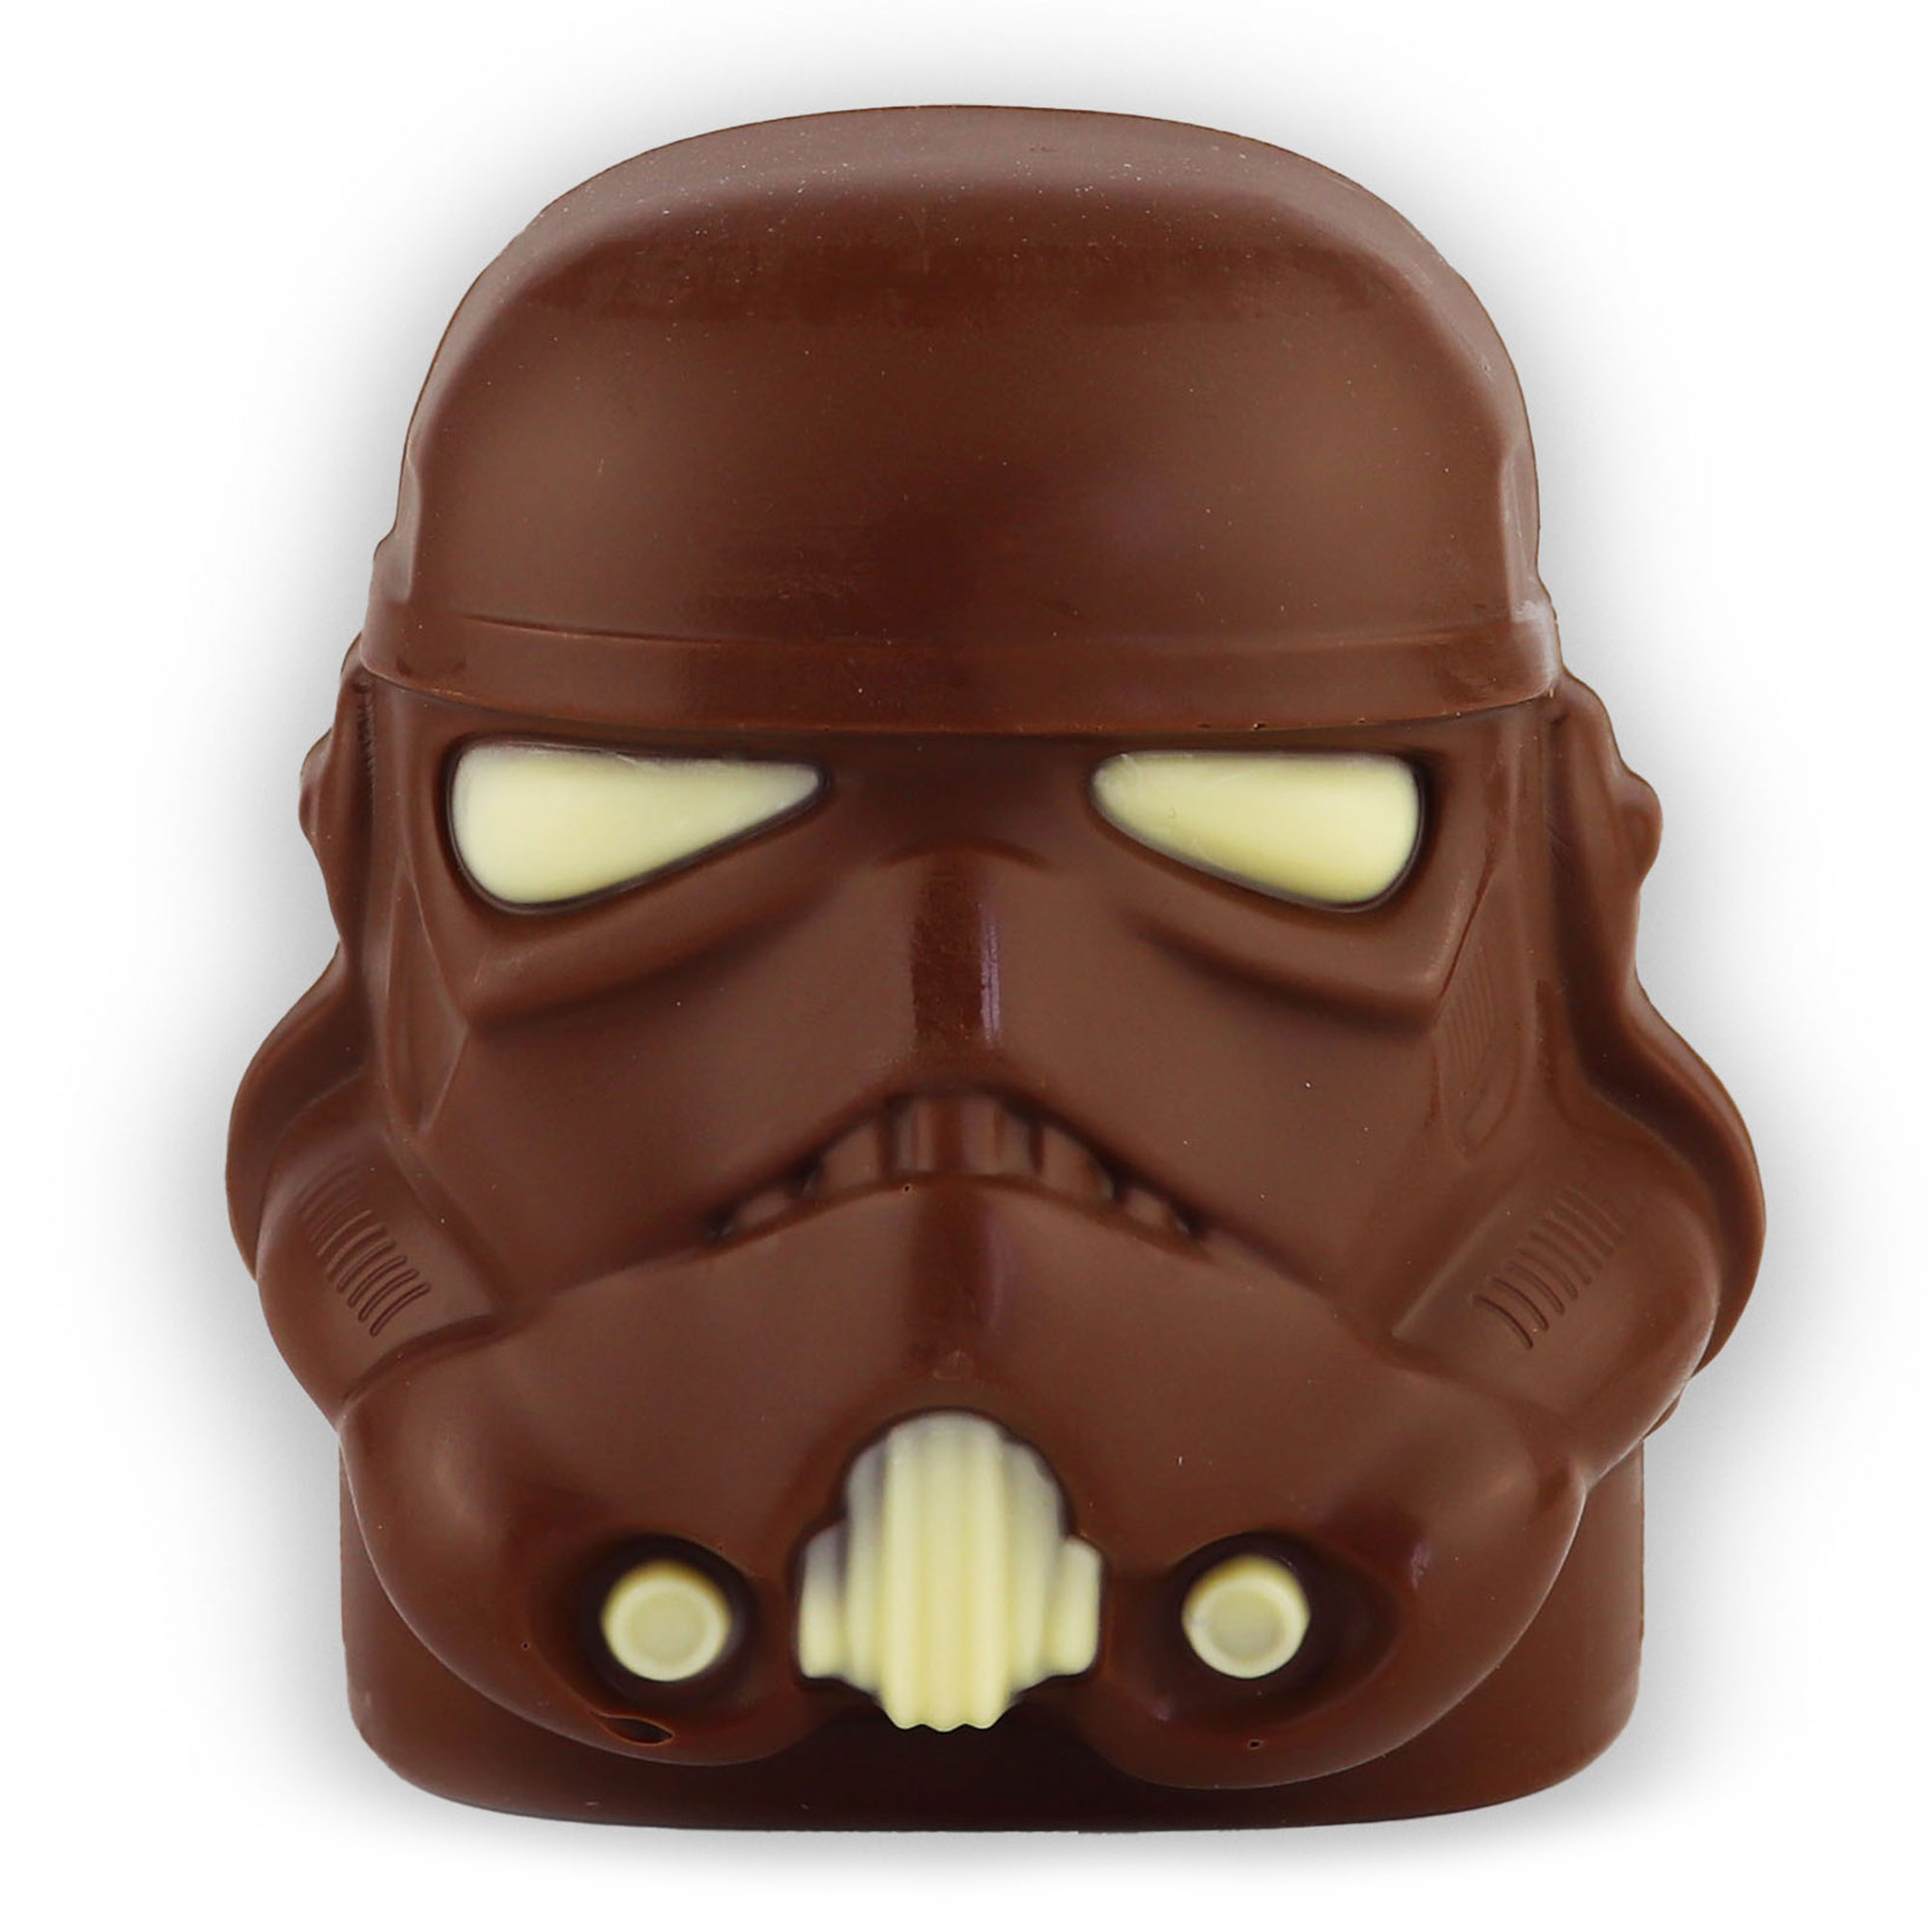 Original Storm Trooper Milk Chocolate Helmet